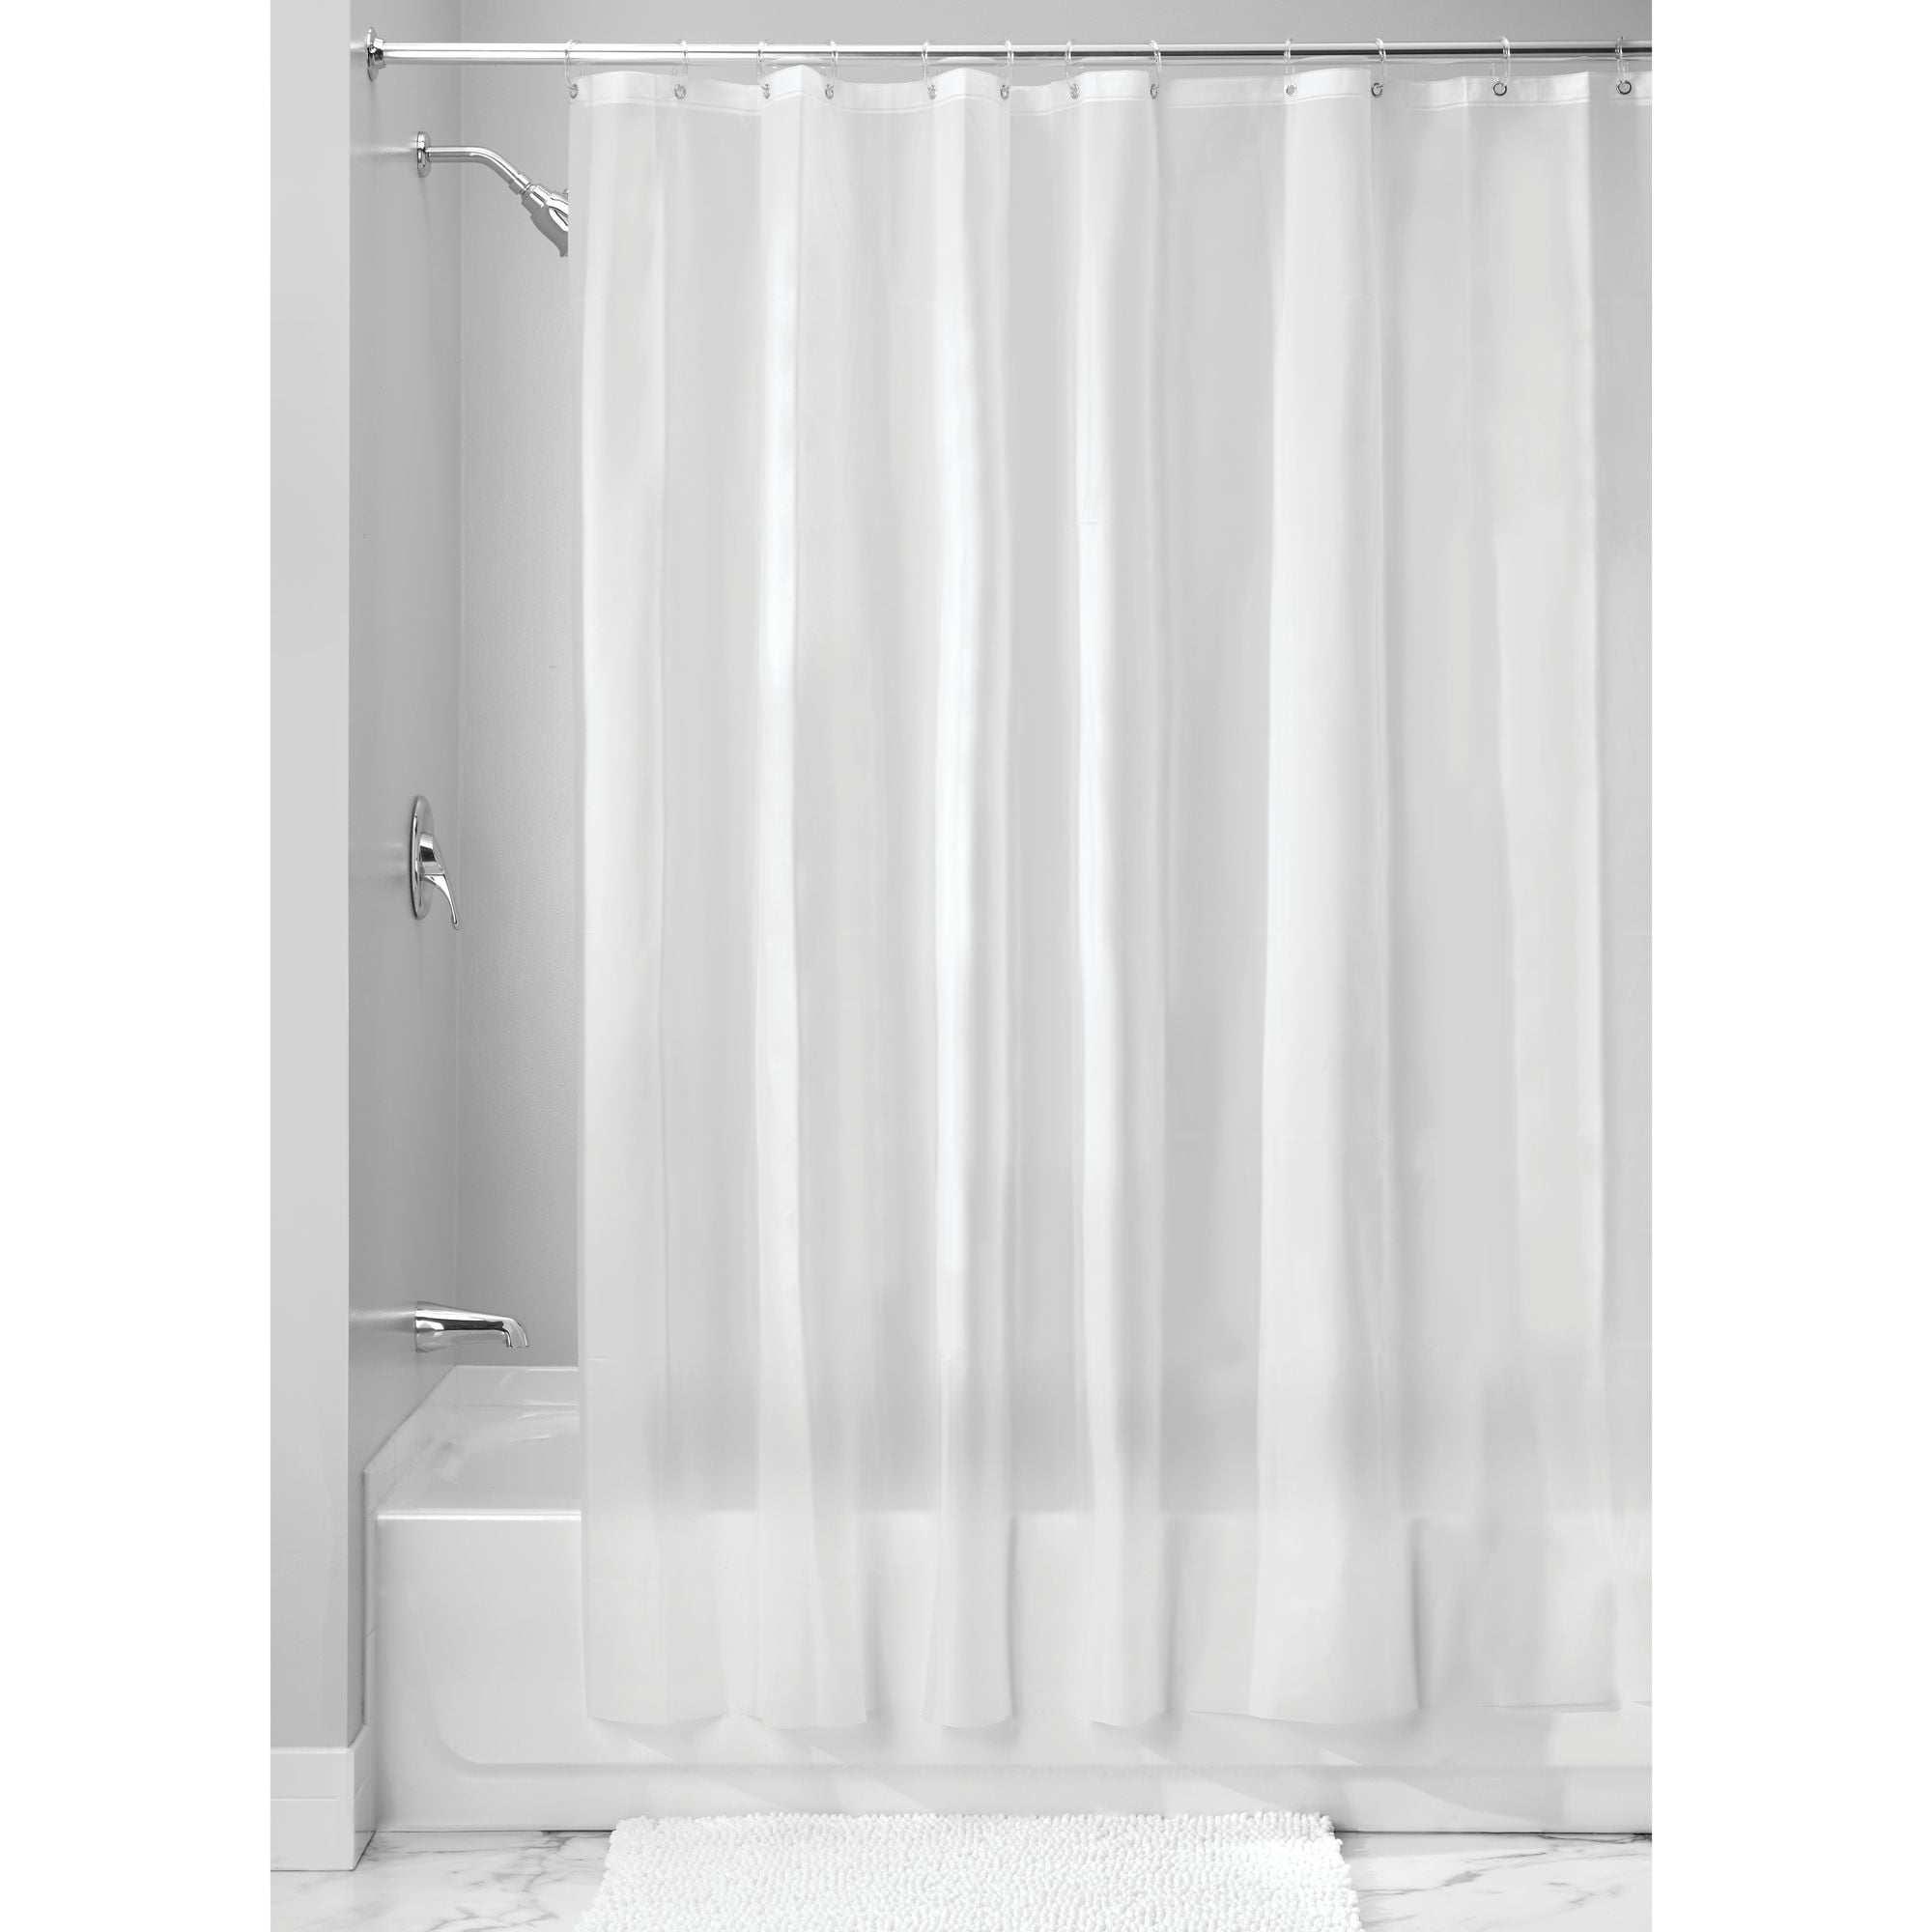 White InterDesign Mildew-Free EVA 5.5 Gauge Shower Curtain Liner 72 x 96 